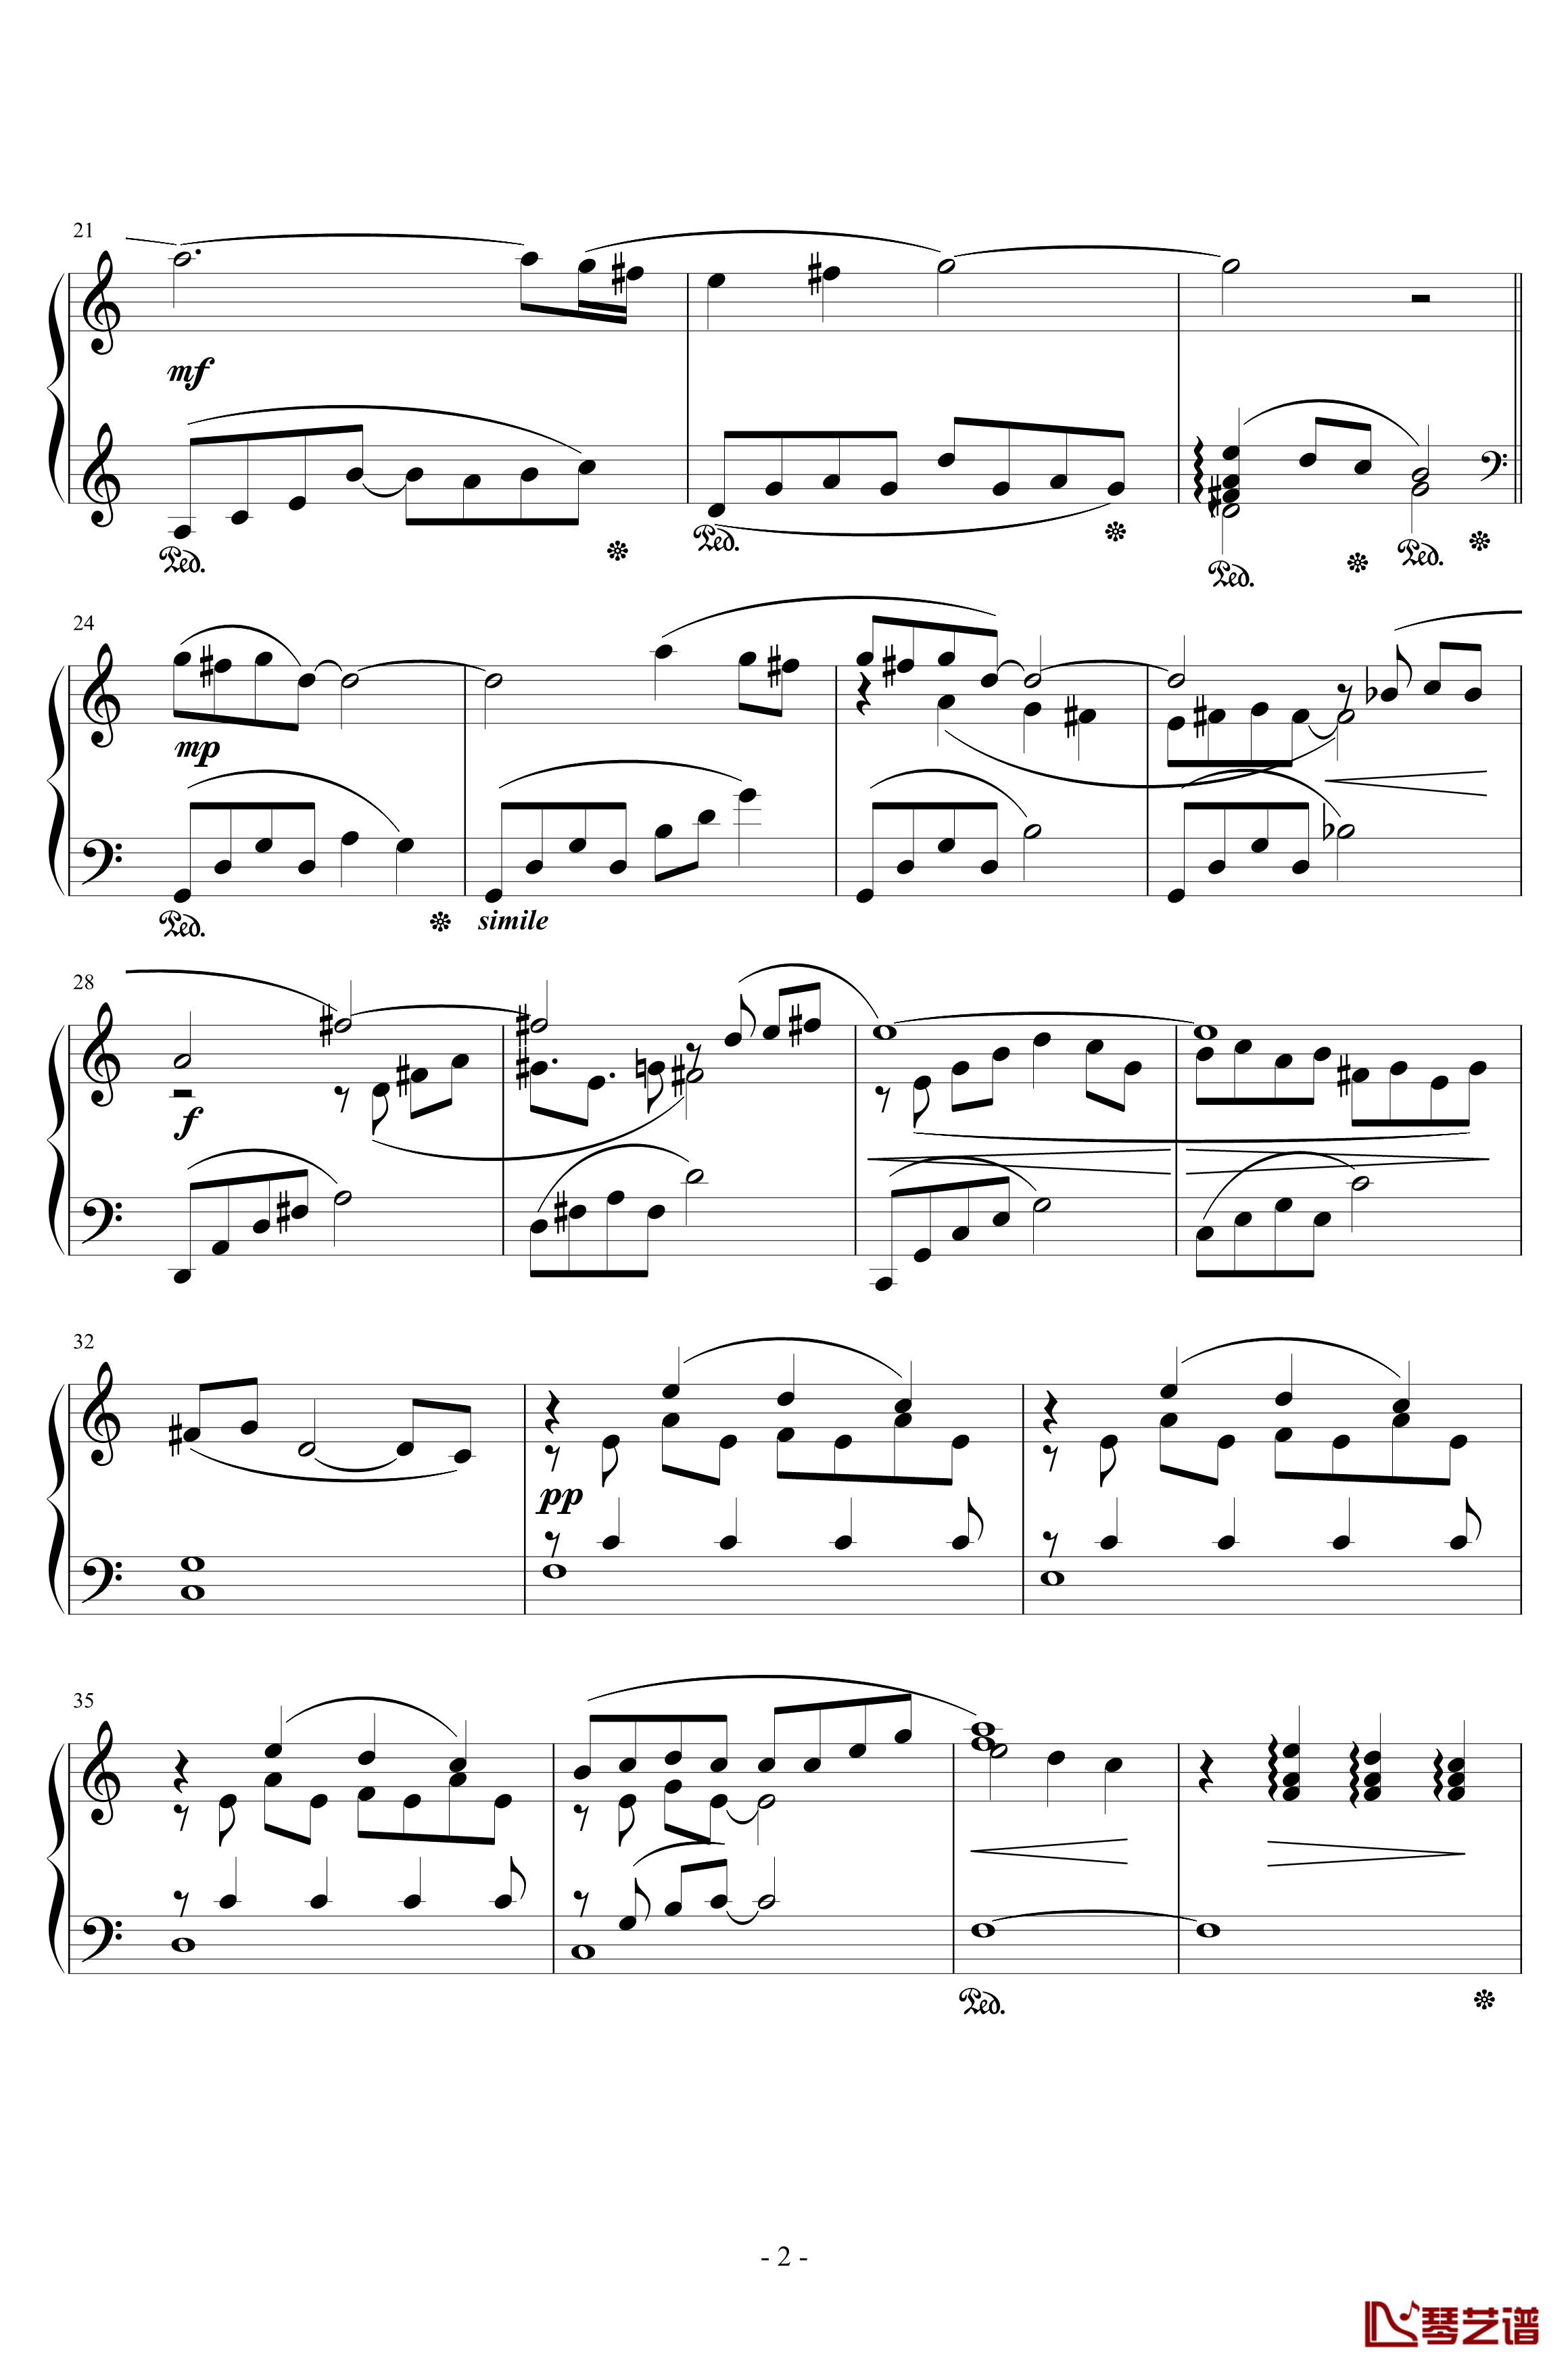 最终幻想8花园主题音乐钢琴谱-植松伸夫